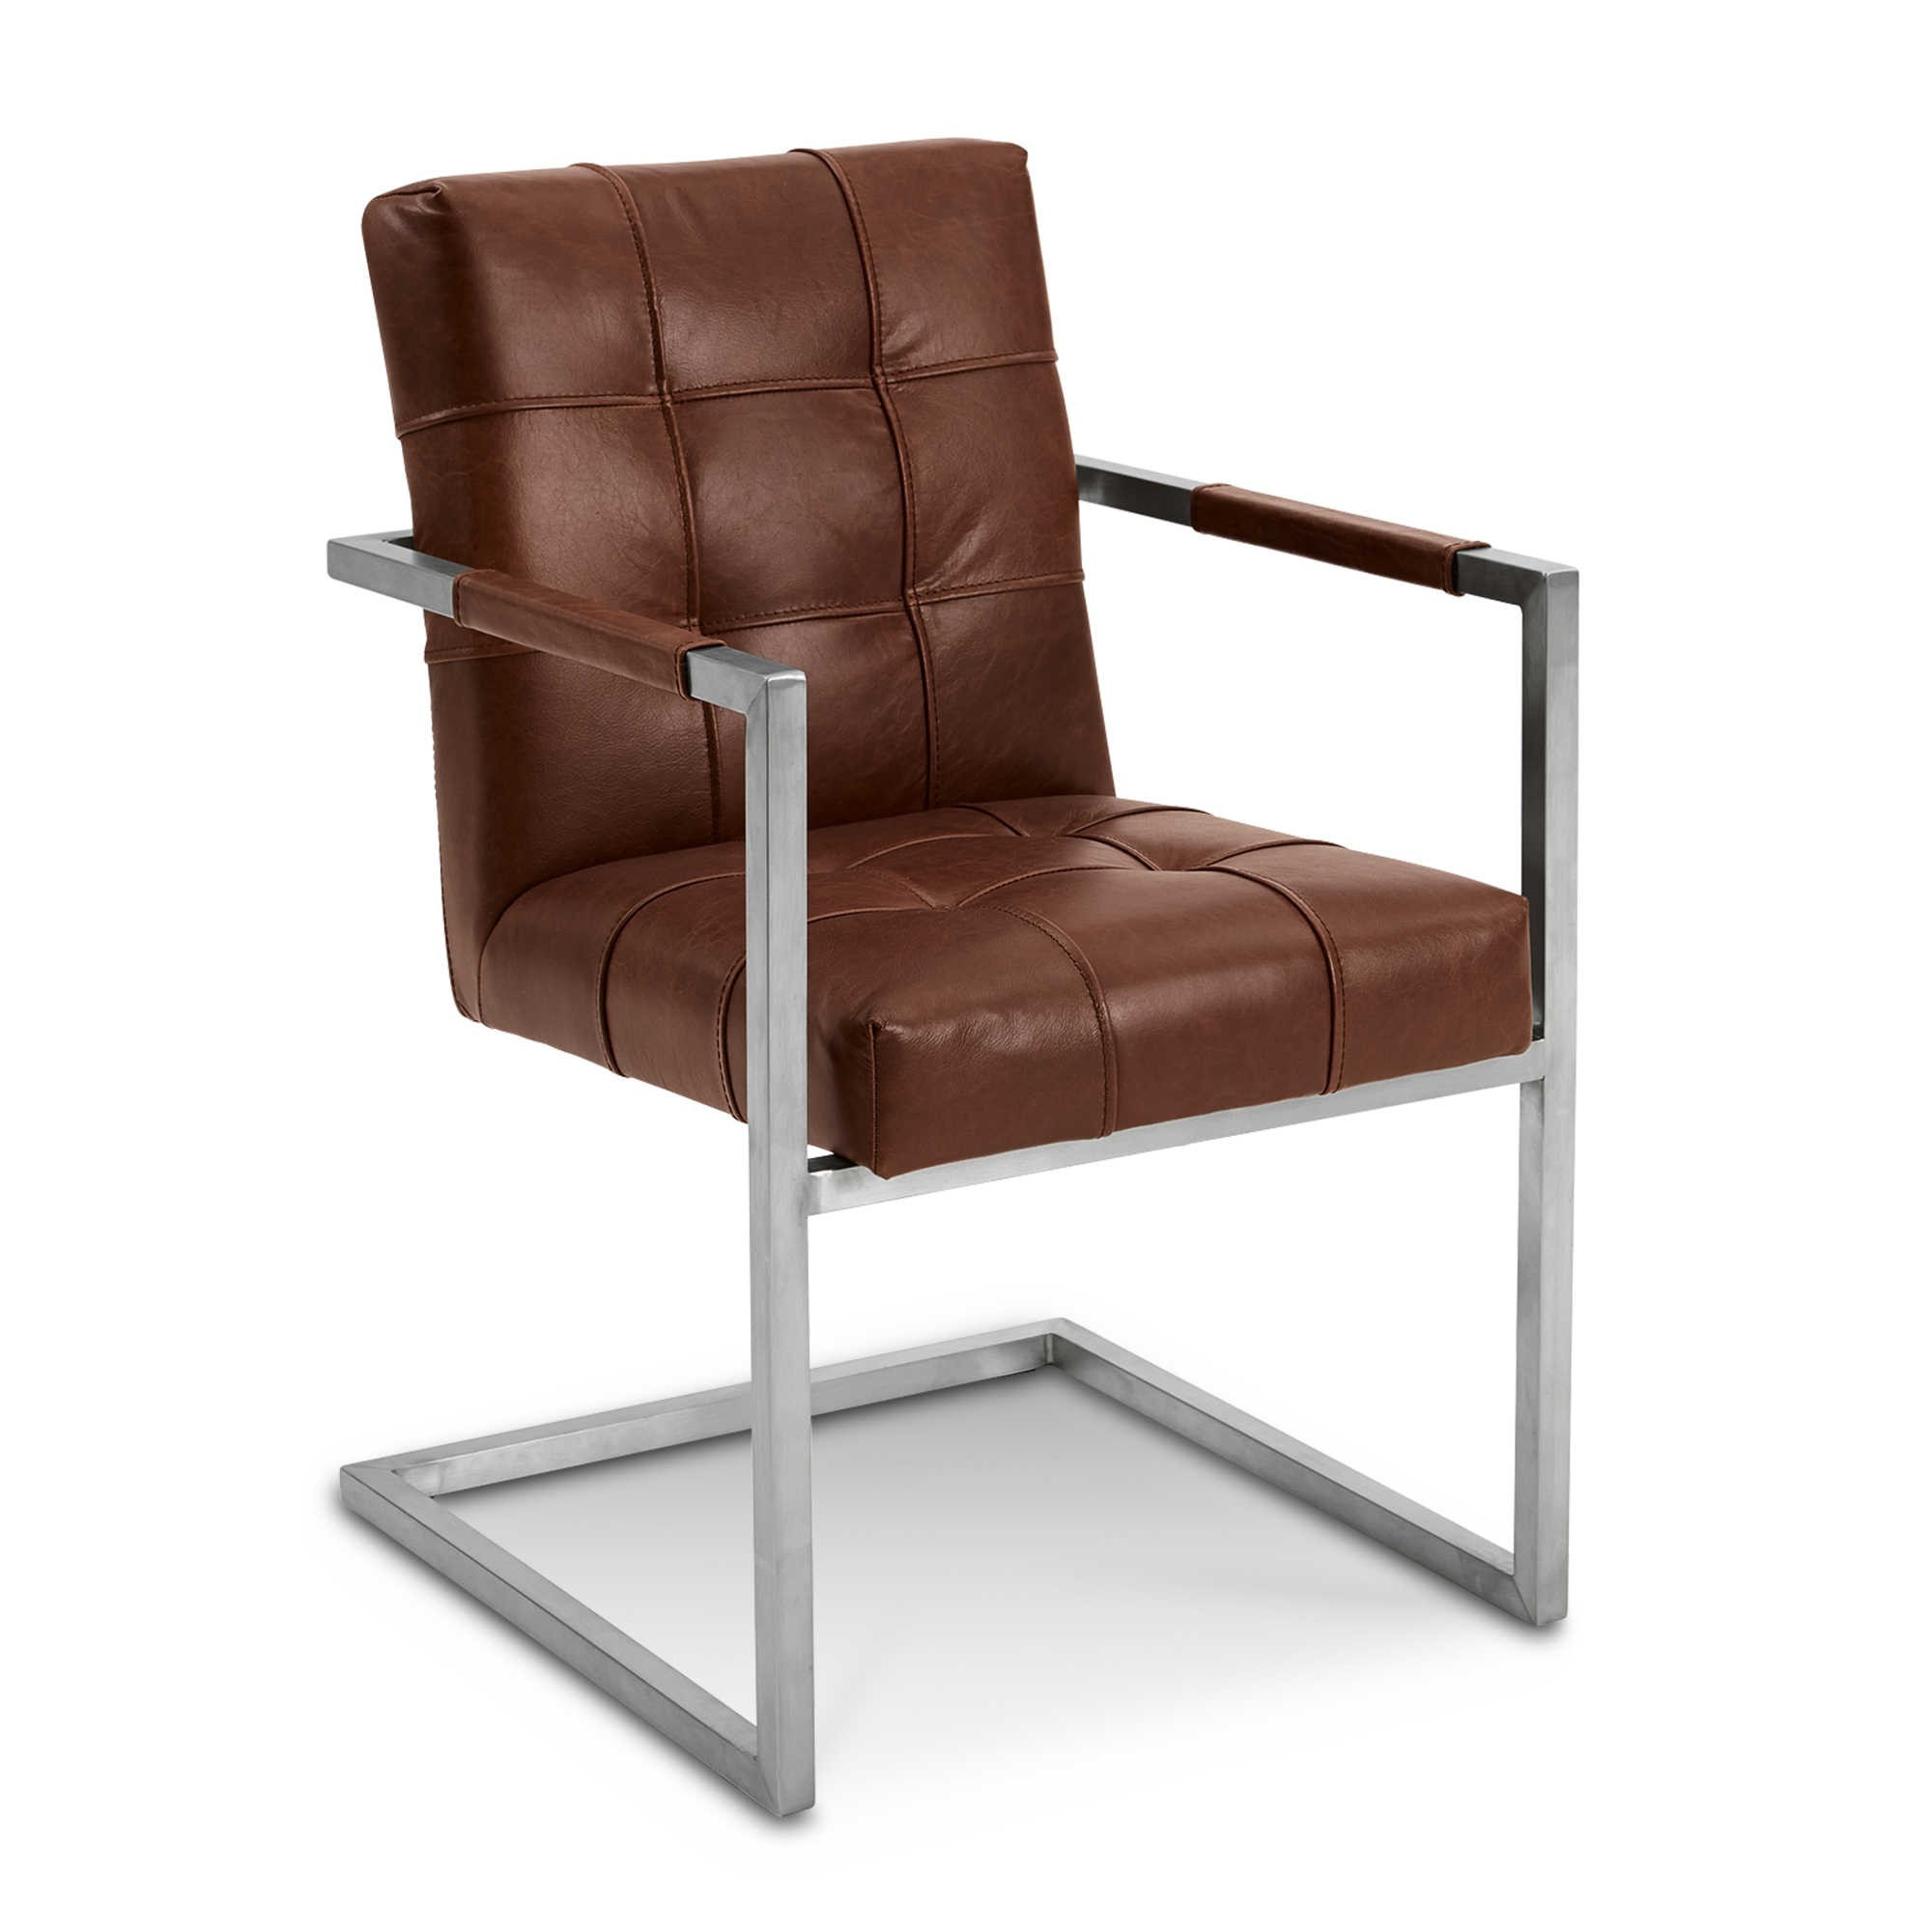 Esszimmerstühle Leder
 Möbel Aufregend esszimmerstühle leder musterring design